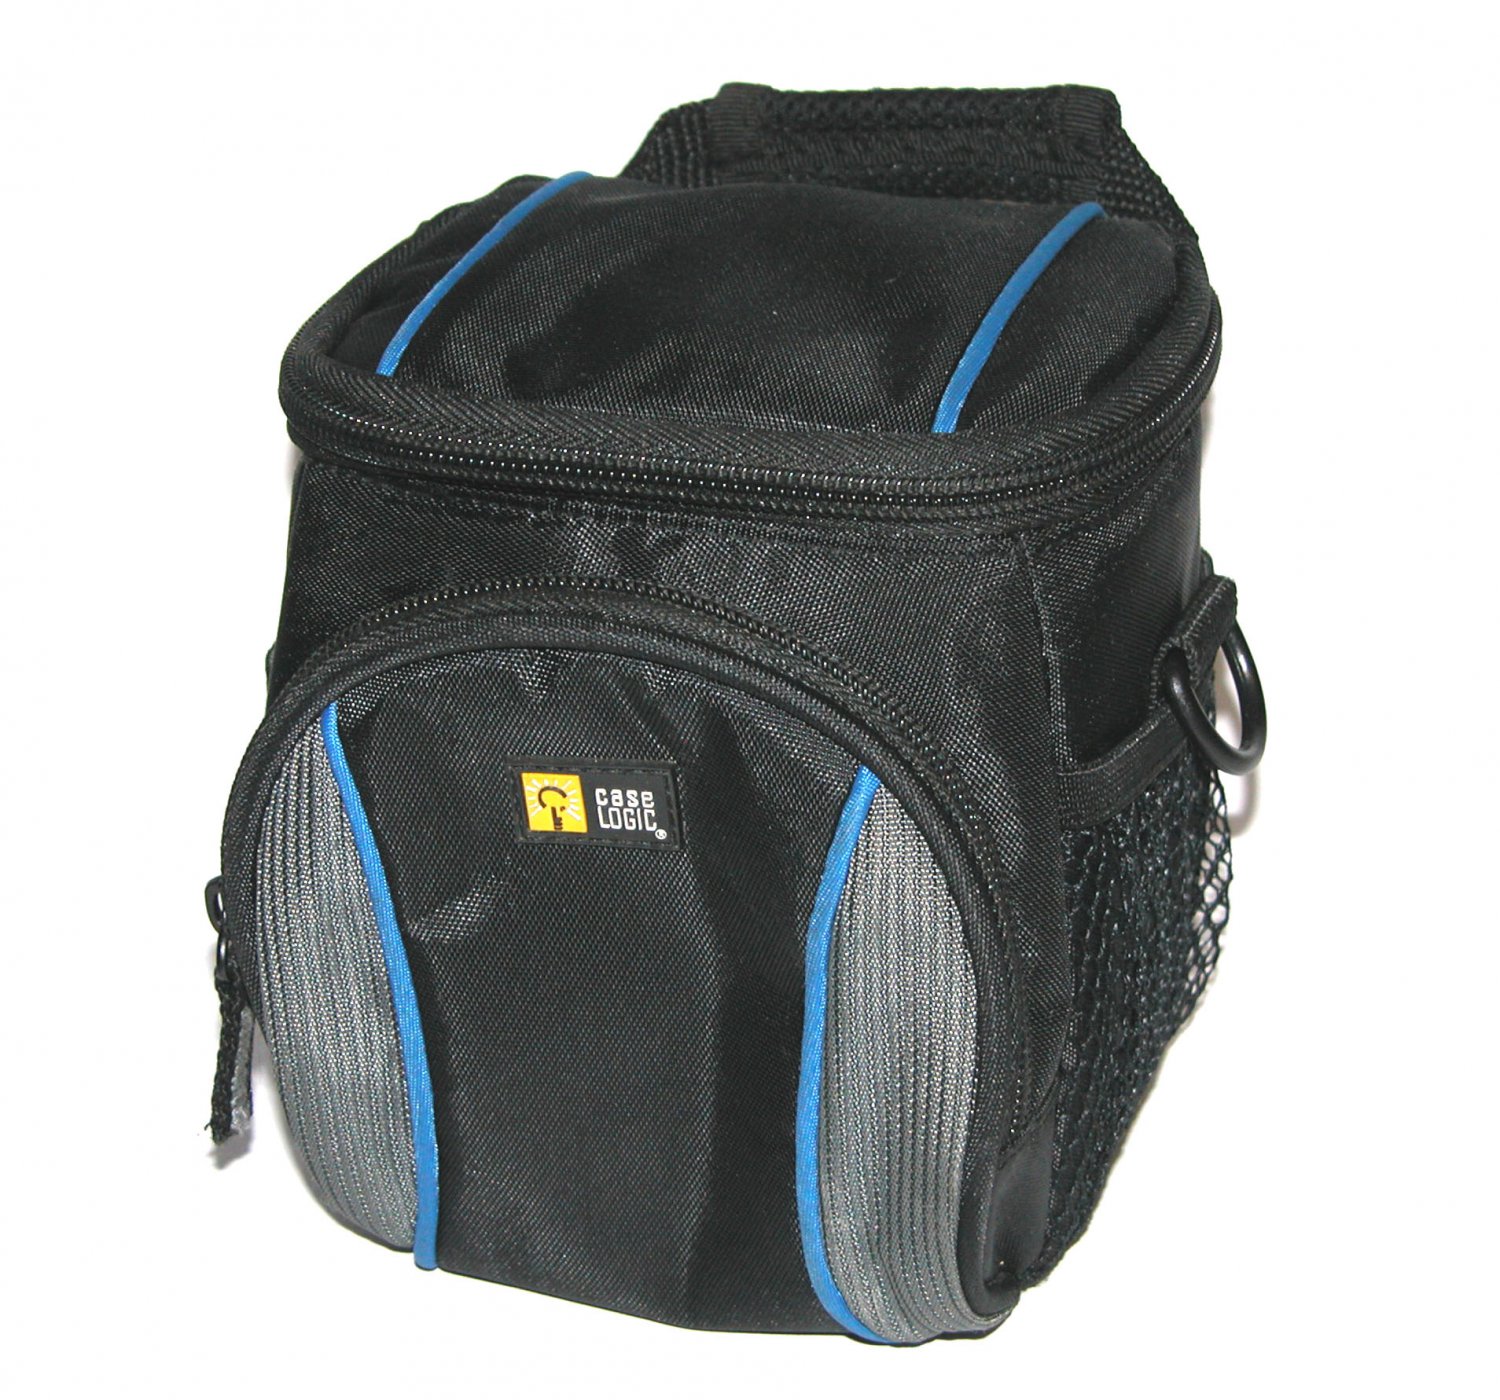 Case Logic Soft Camera Bag - Black (03/06/S) 6H x 5.5W x 4.5D